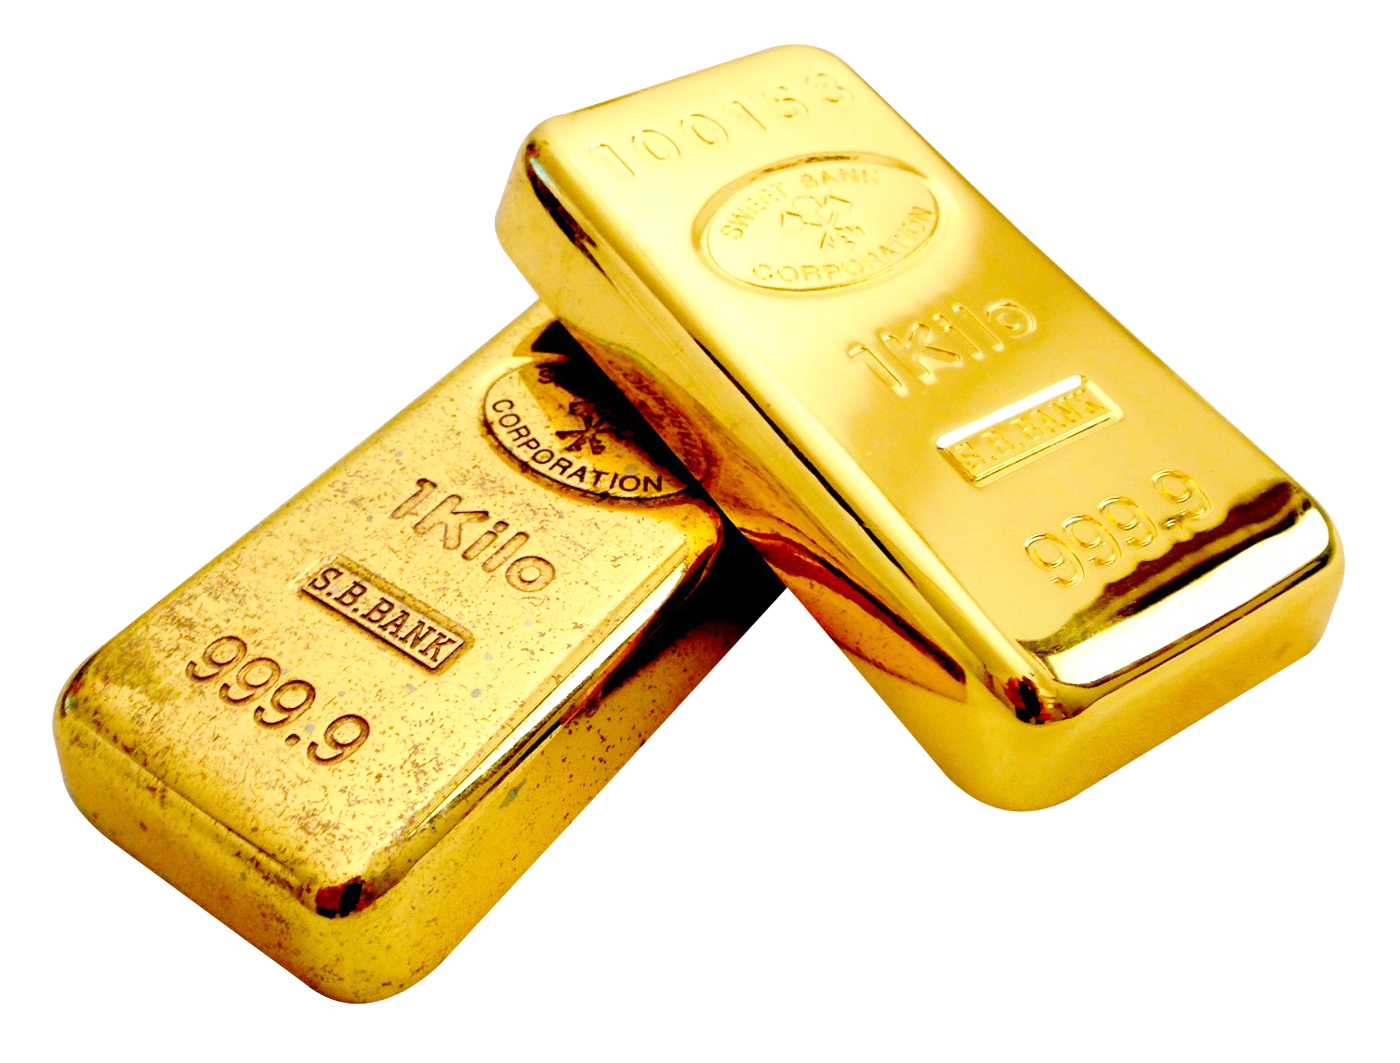 Прогноз цен на золото в 2022 году - мнение эксперта